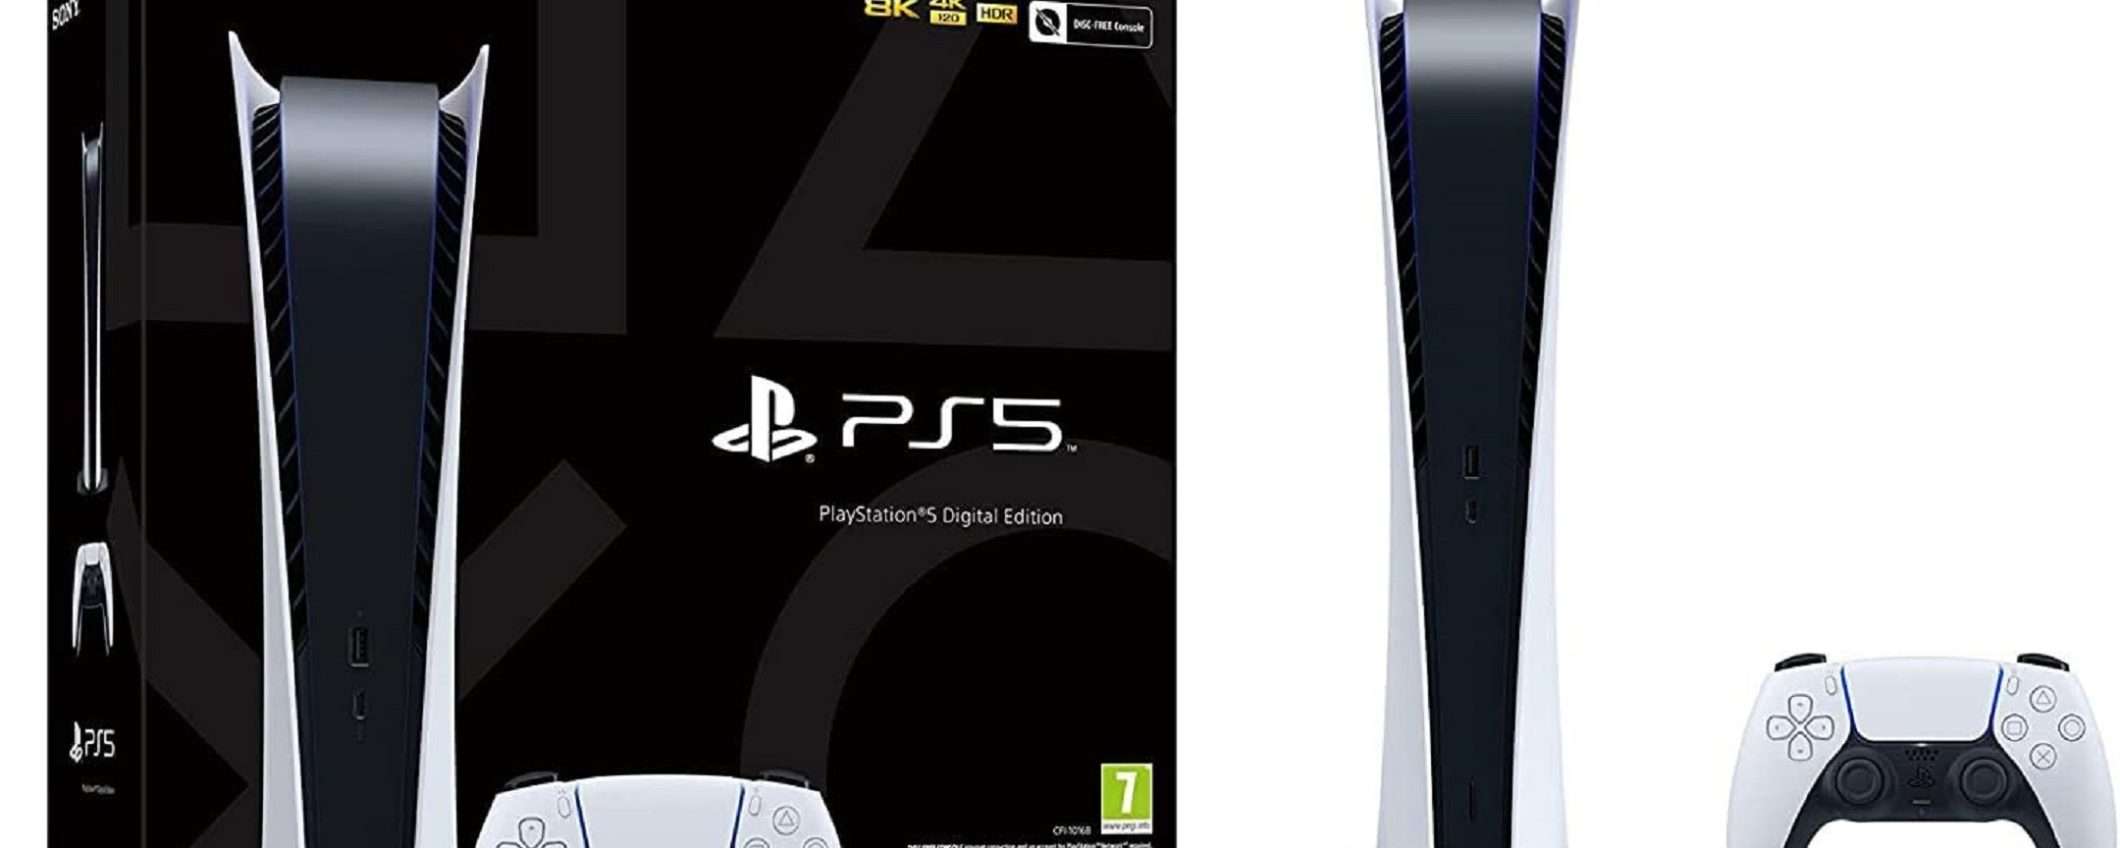 PlayStation 5 edizione Digitale: su Amazon la potete acquistare a soli 439€